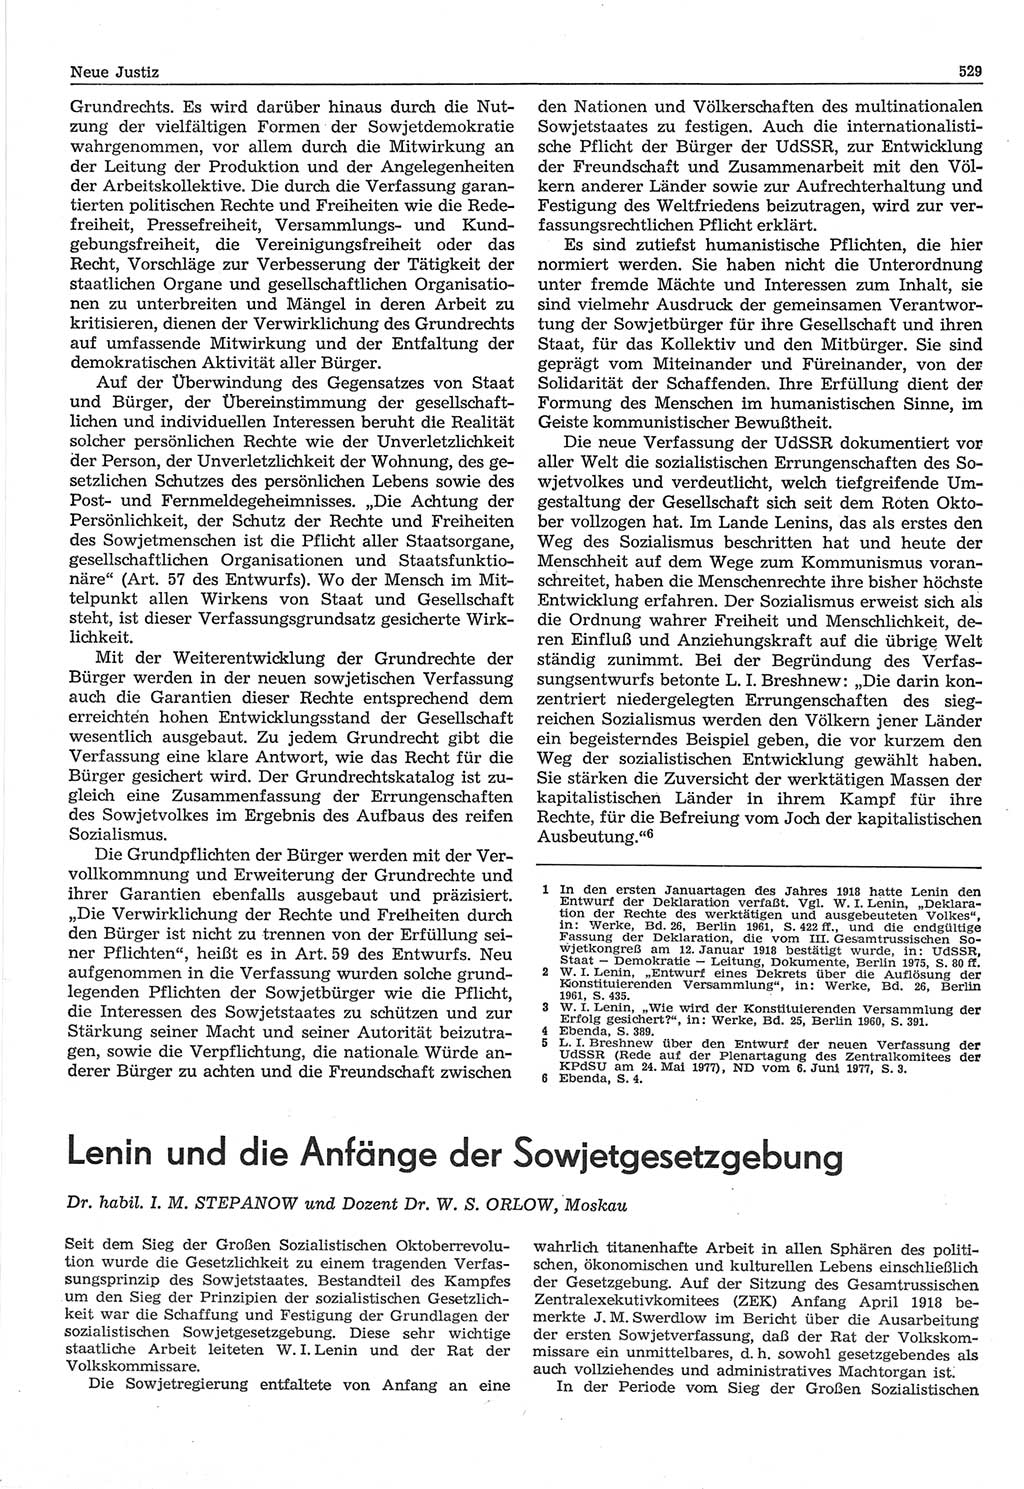 Neue Justiz (NJ), Zeitschrift für Recht und Rechtswissenschaft-Zeitschrift, sozialistisches Recht und Gesetzlichkeit, 31. Jahrgang 1977, Seite 529 (NJ DDR 1977, S. 529)